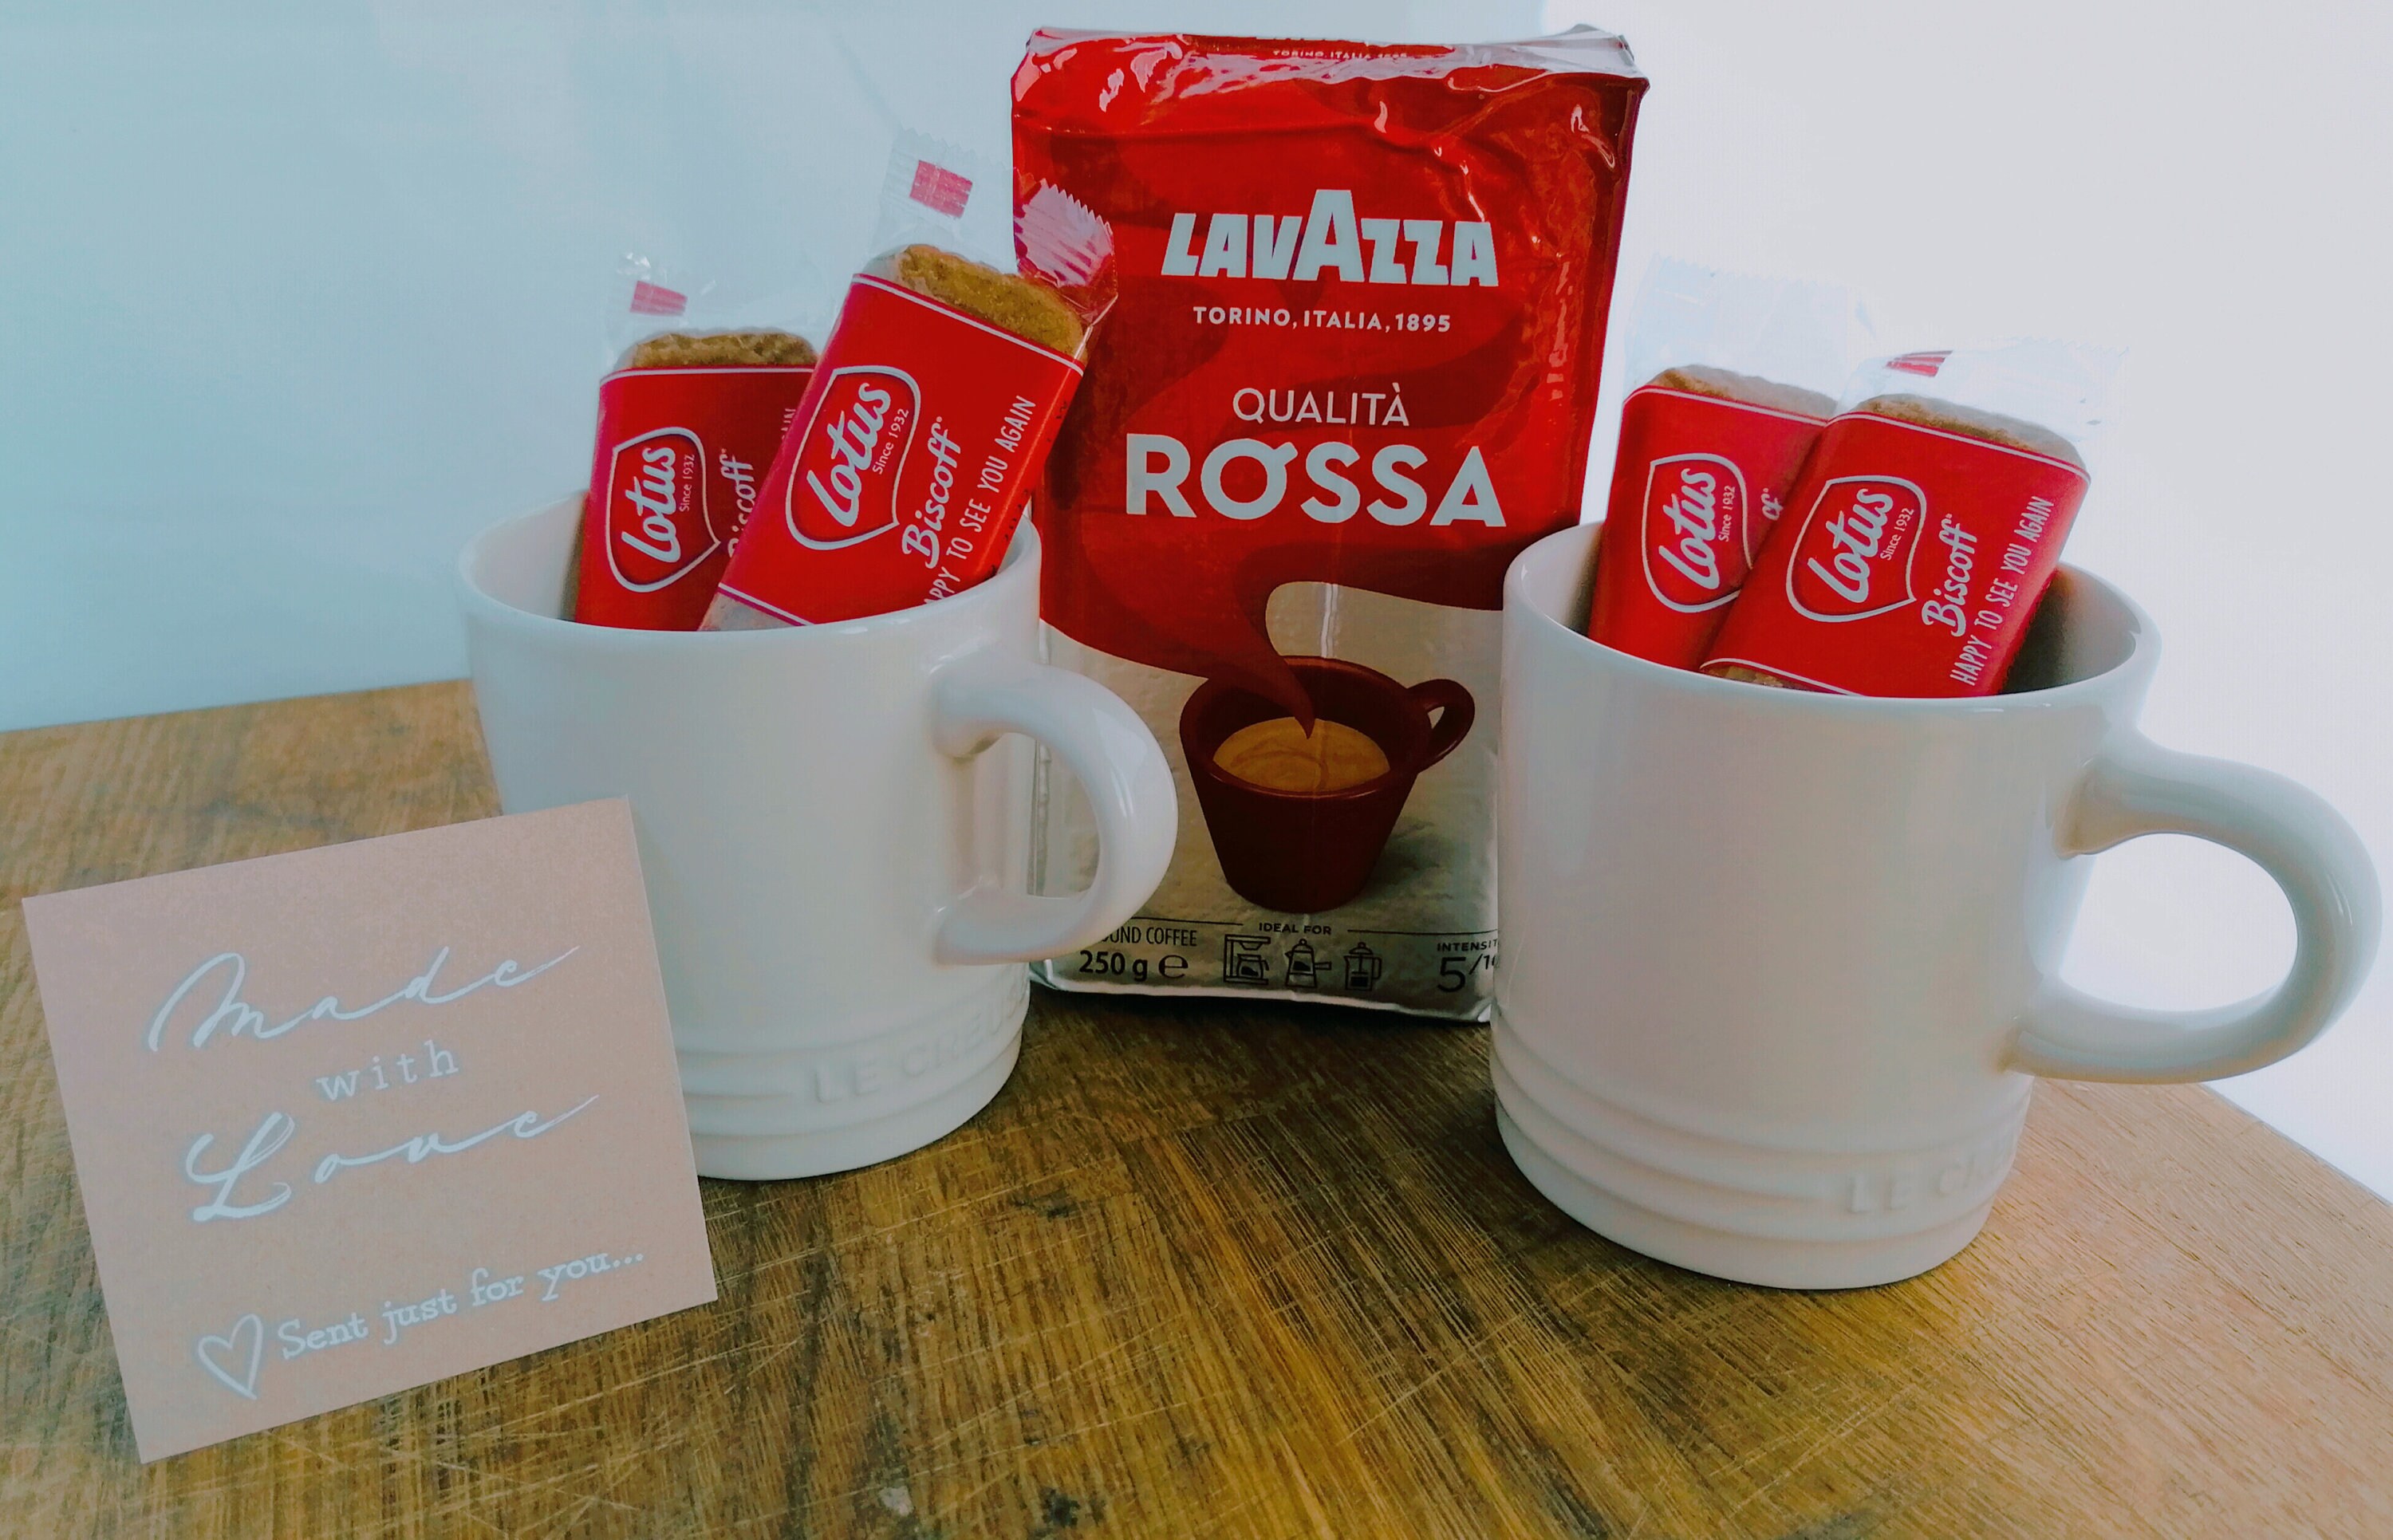 Acheter en ligne LAVAZZA Café moulu Qualità Rossa (250 g) à bons prix et en  toute sécurité 